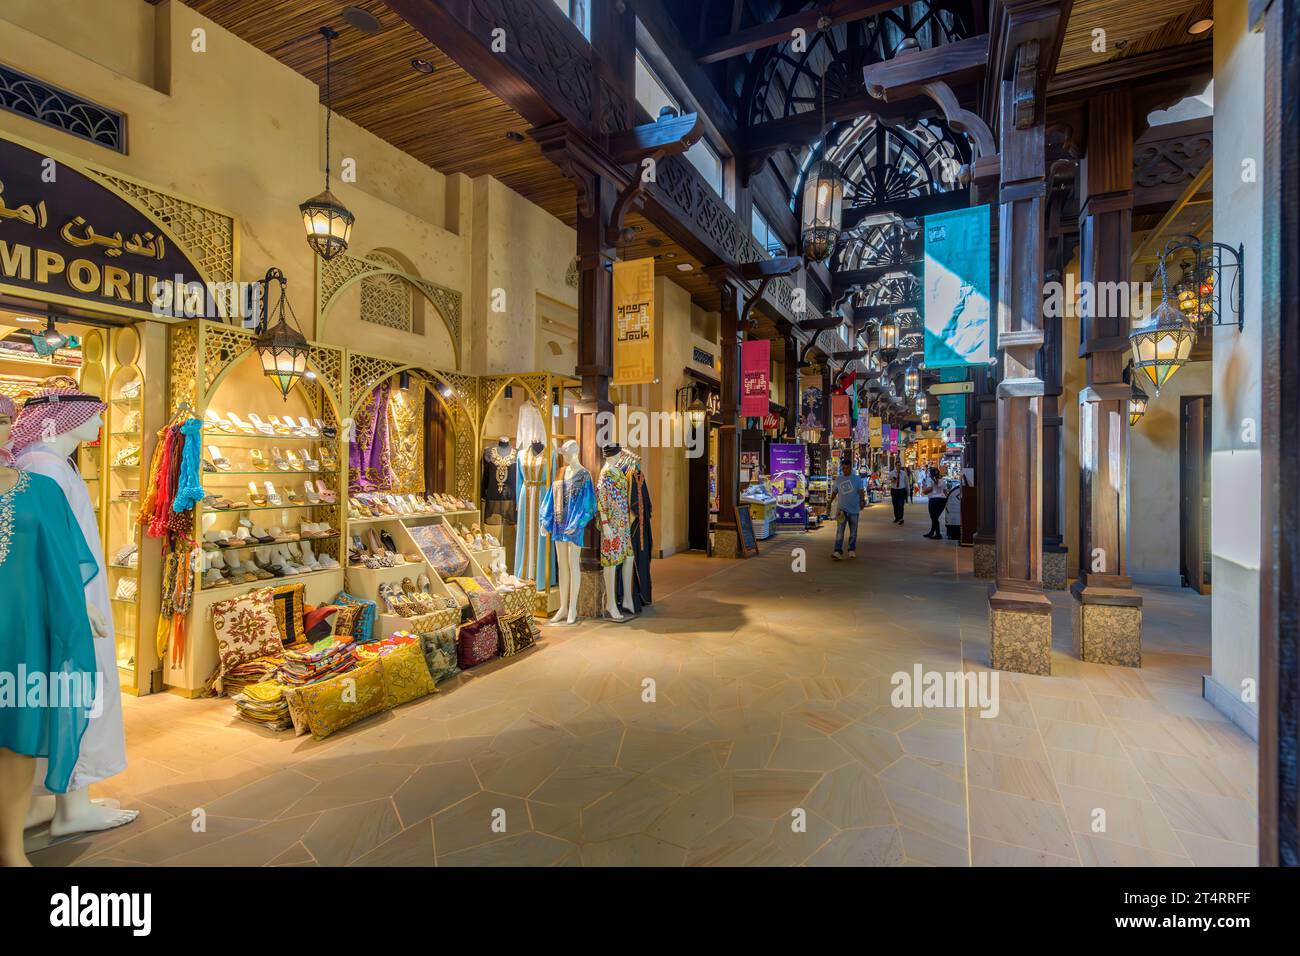 Farbenfrohe Geschäfte mit Geschenken, Souvenirs und Kleidung im Souk Madinat Jumeirah, einem exklusiven Einkaufsmarkt und Einkaufszentrum in Dubai, VAE Stockfoto